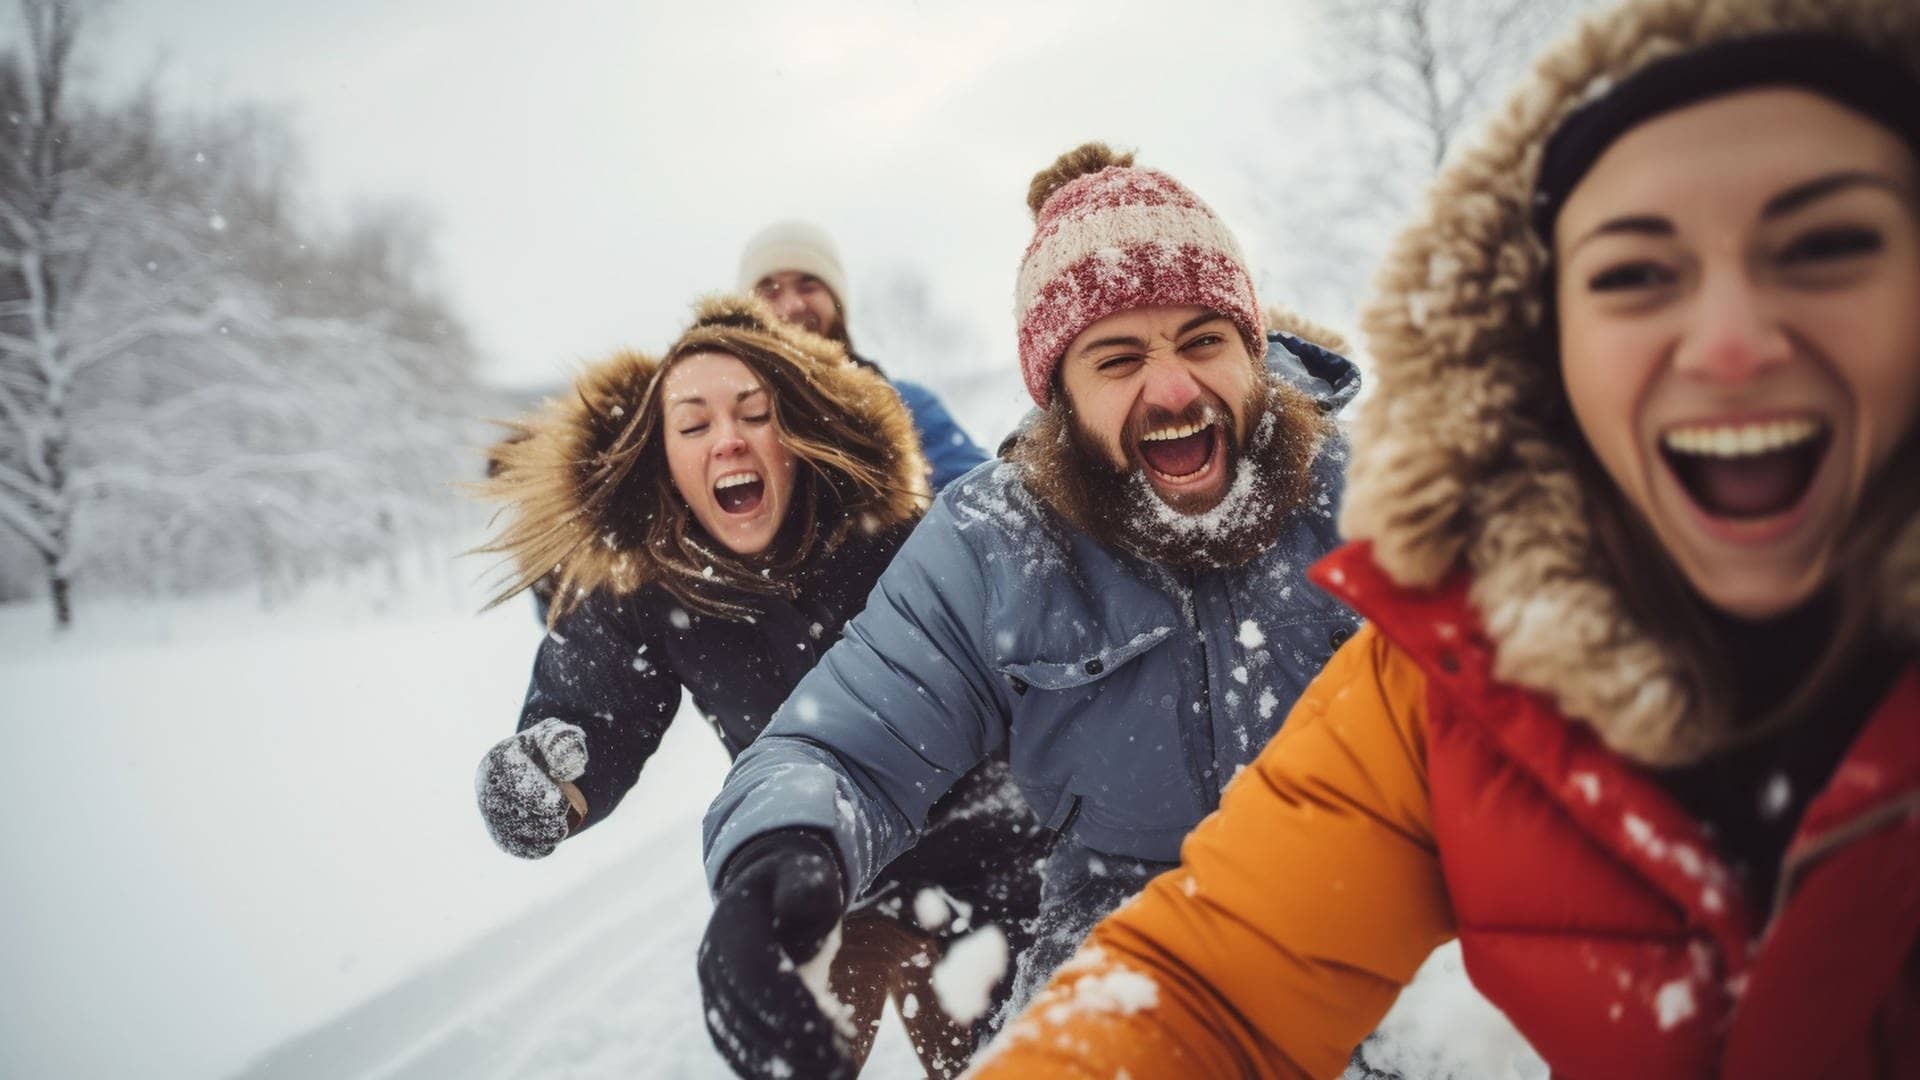 Drei junge Leute rennen im Winter lachend durch den Schnee – ein Mythos, der stimmt: dass Lachen den Körper aufwärmt.